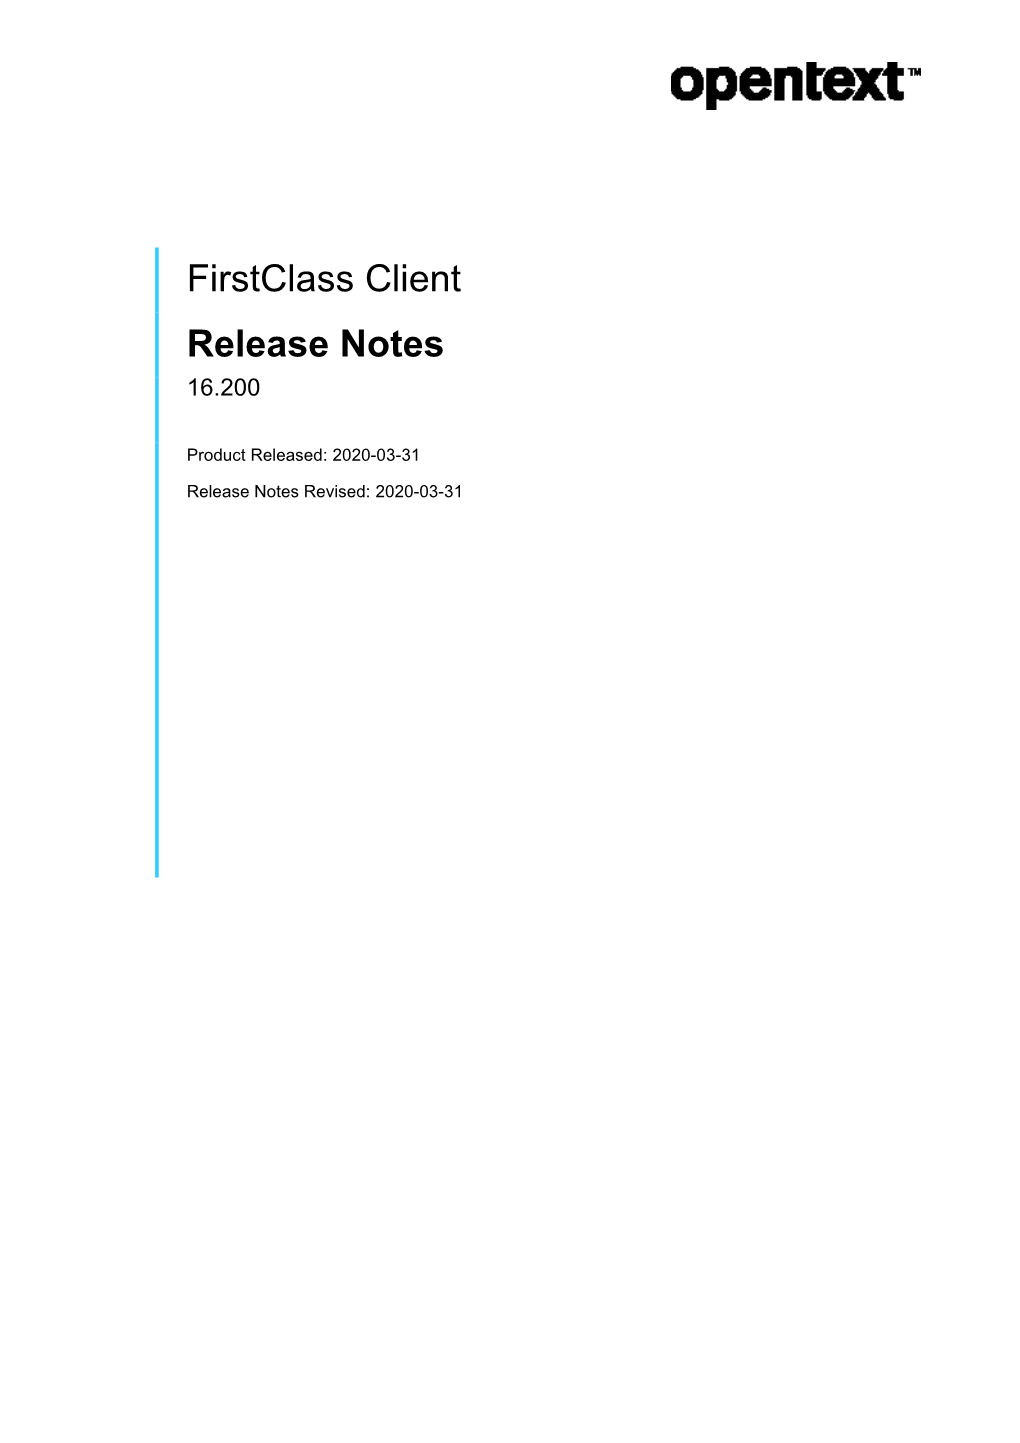 Firstclass Client Release Notes 16.200